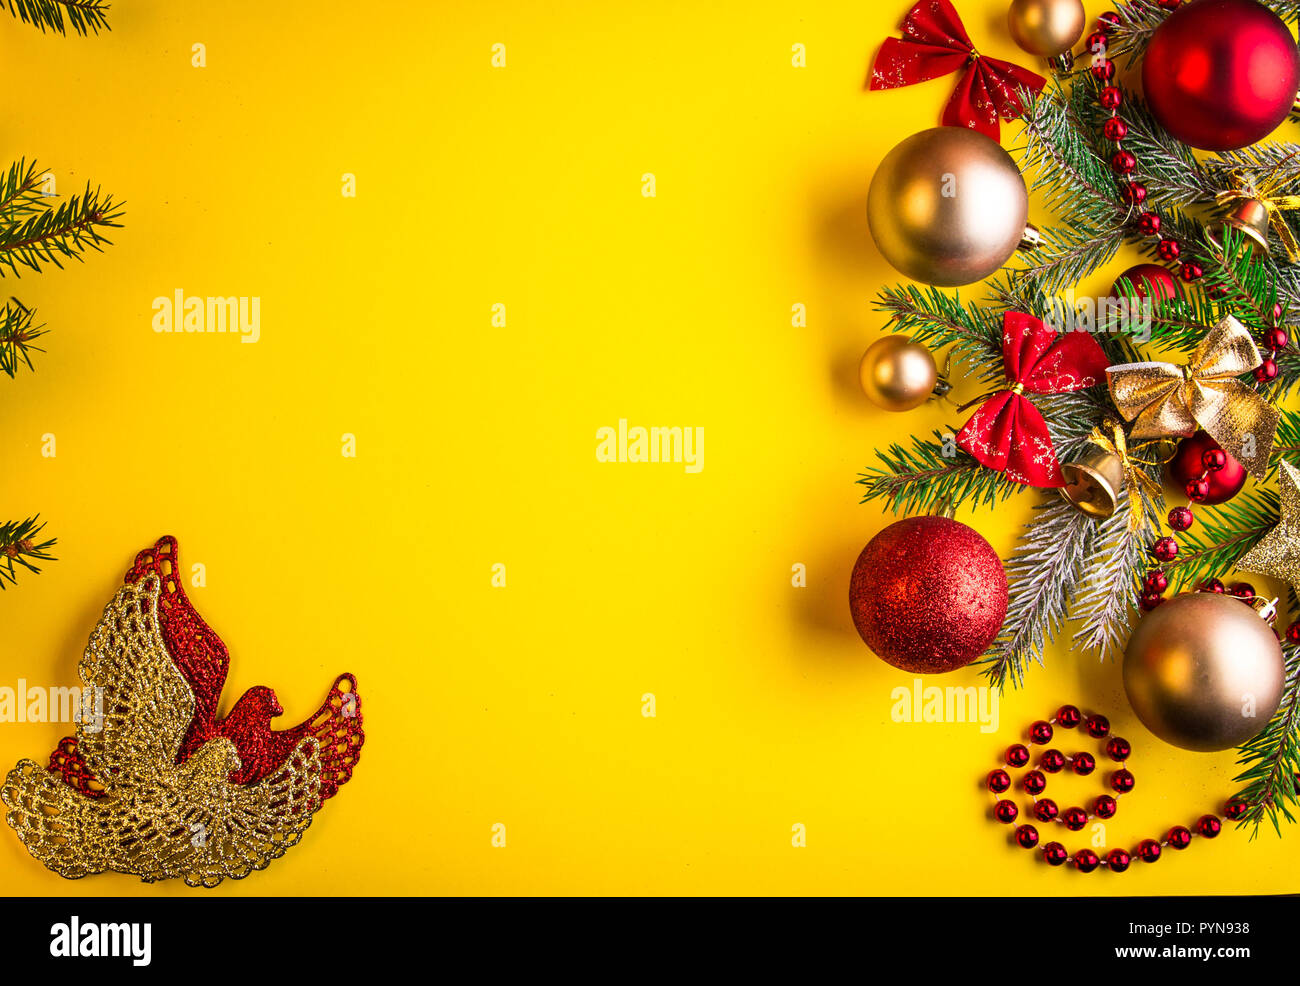 Nền Giáng sinh màu vàng với cây tuyết, đồ chơi và nơ khiến cho không gian của bạn thêm phần ấm cúng và lãng mạn. Những hình ảnh đầy màu sắc và sinh động sẽ đem lại cho bạn một mùa lễ hội tuyệt vời. Hãy cập nhật ngay để tận hưởng sự thu hút mà chúng mang lại!